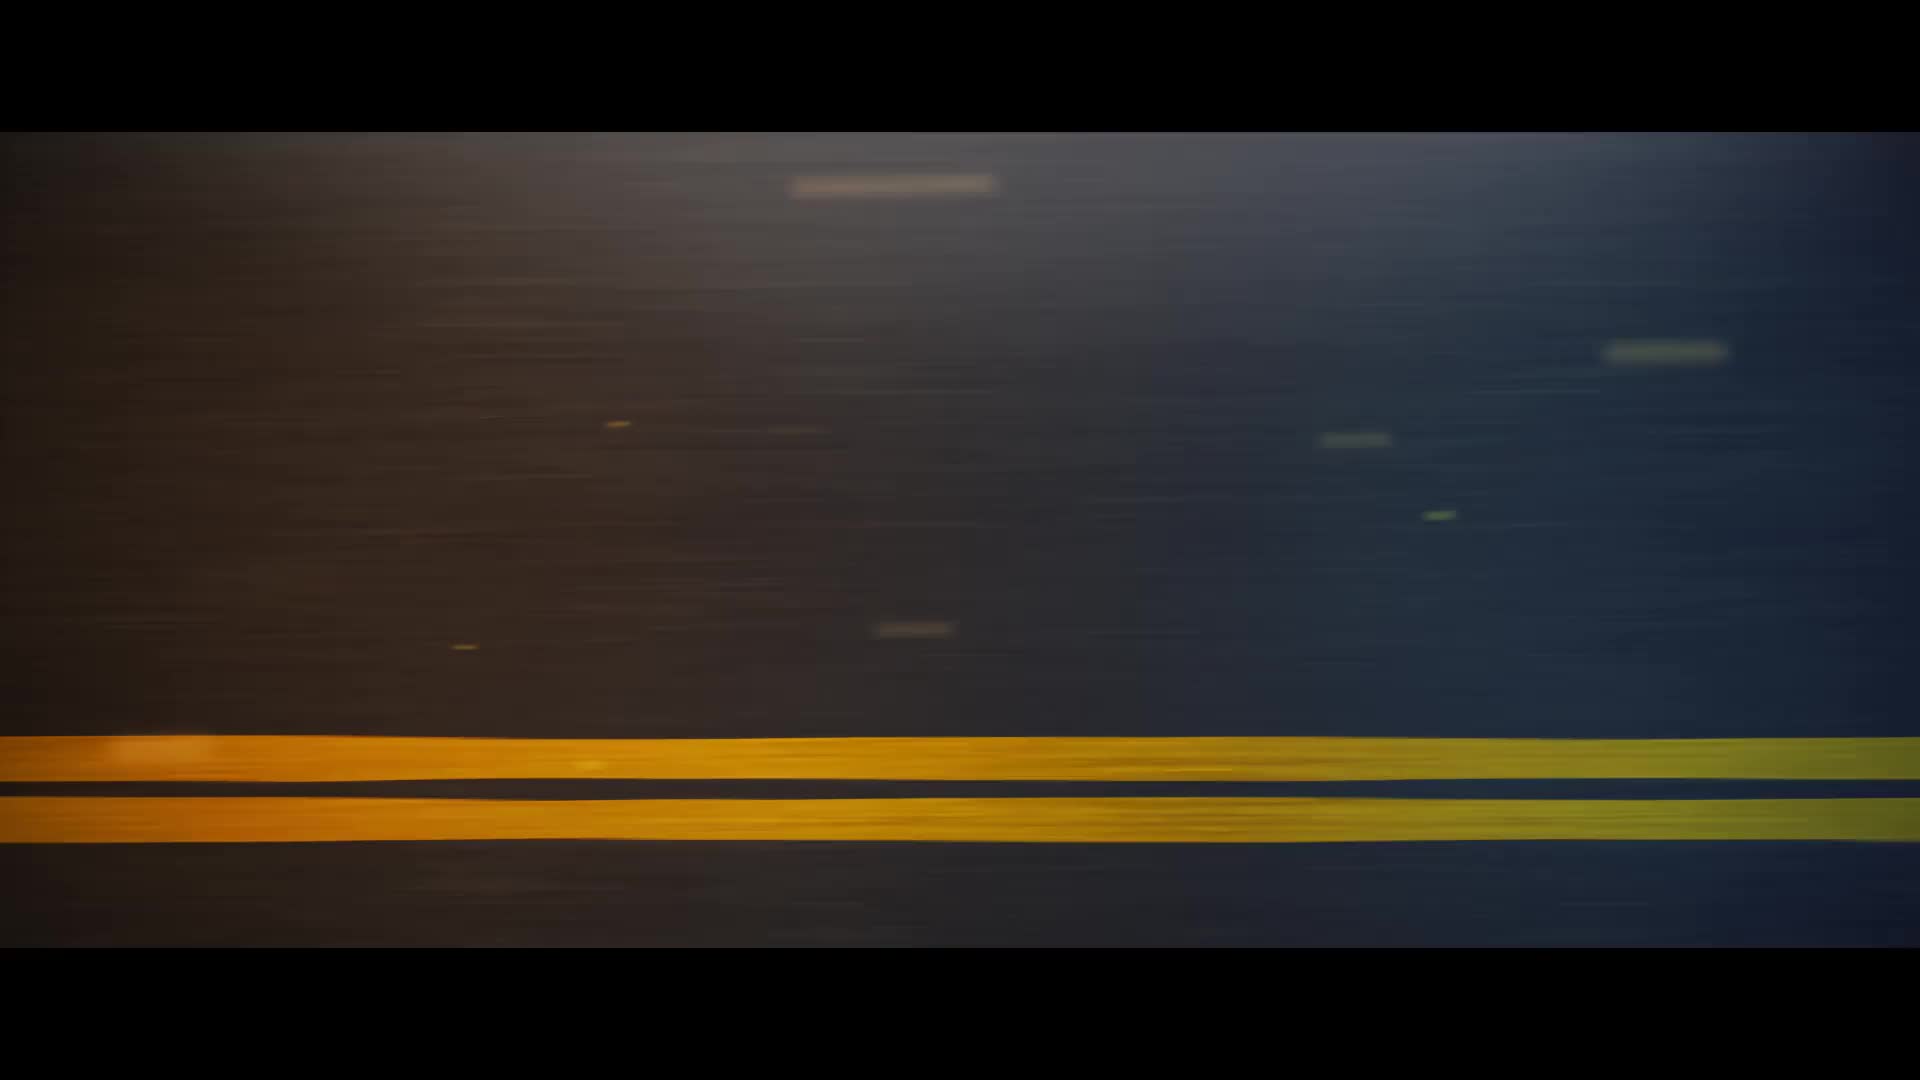 Insane Speed Road Trailer for Premiere Pro Videohive 32096002 Premiere Pro Image 1